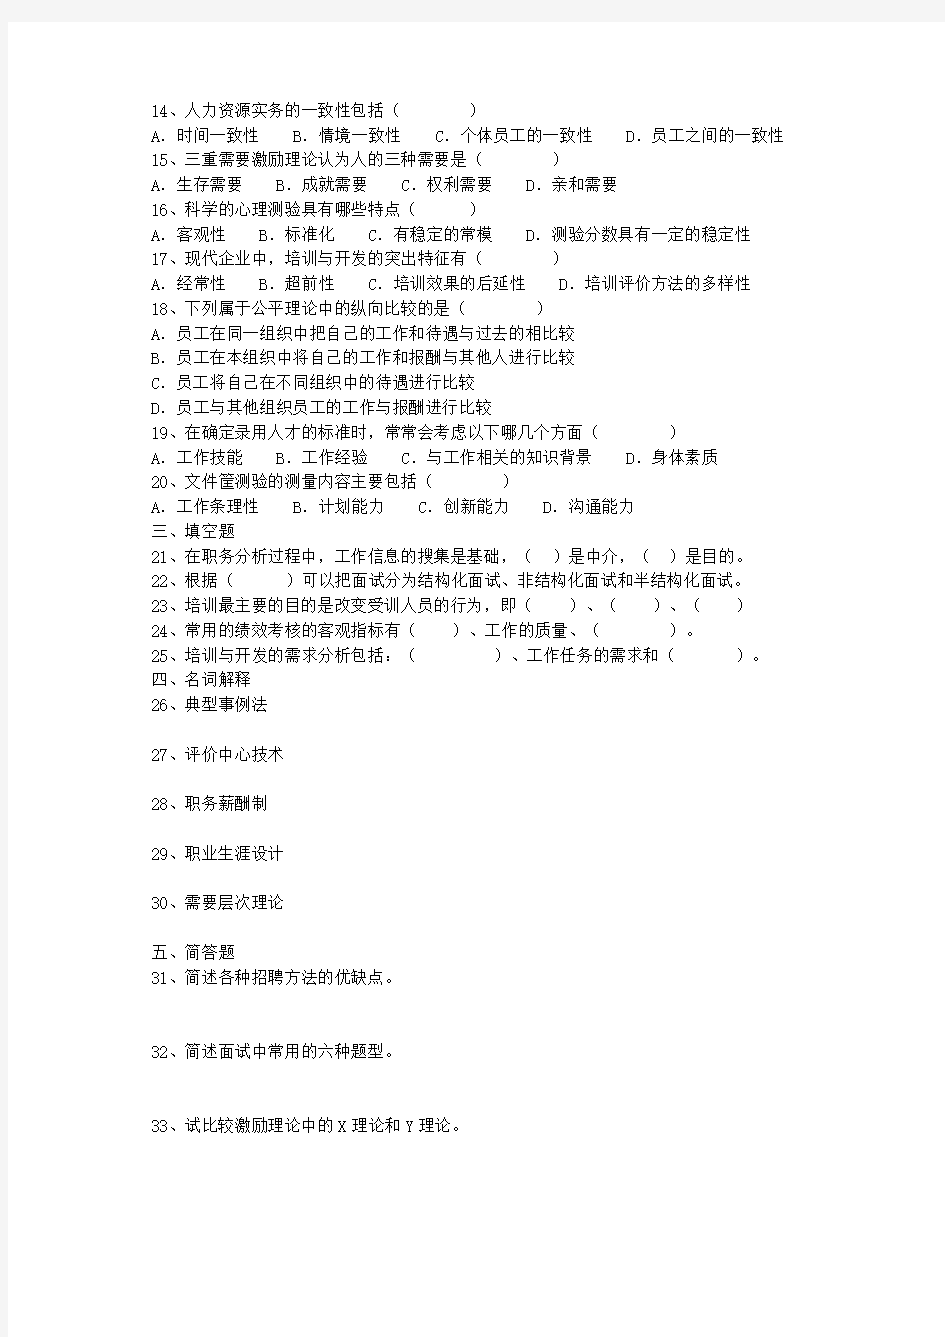 人力资源管理北京自考试卷(2004——2009年)带答案